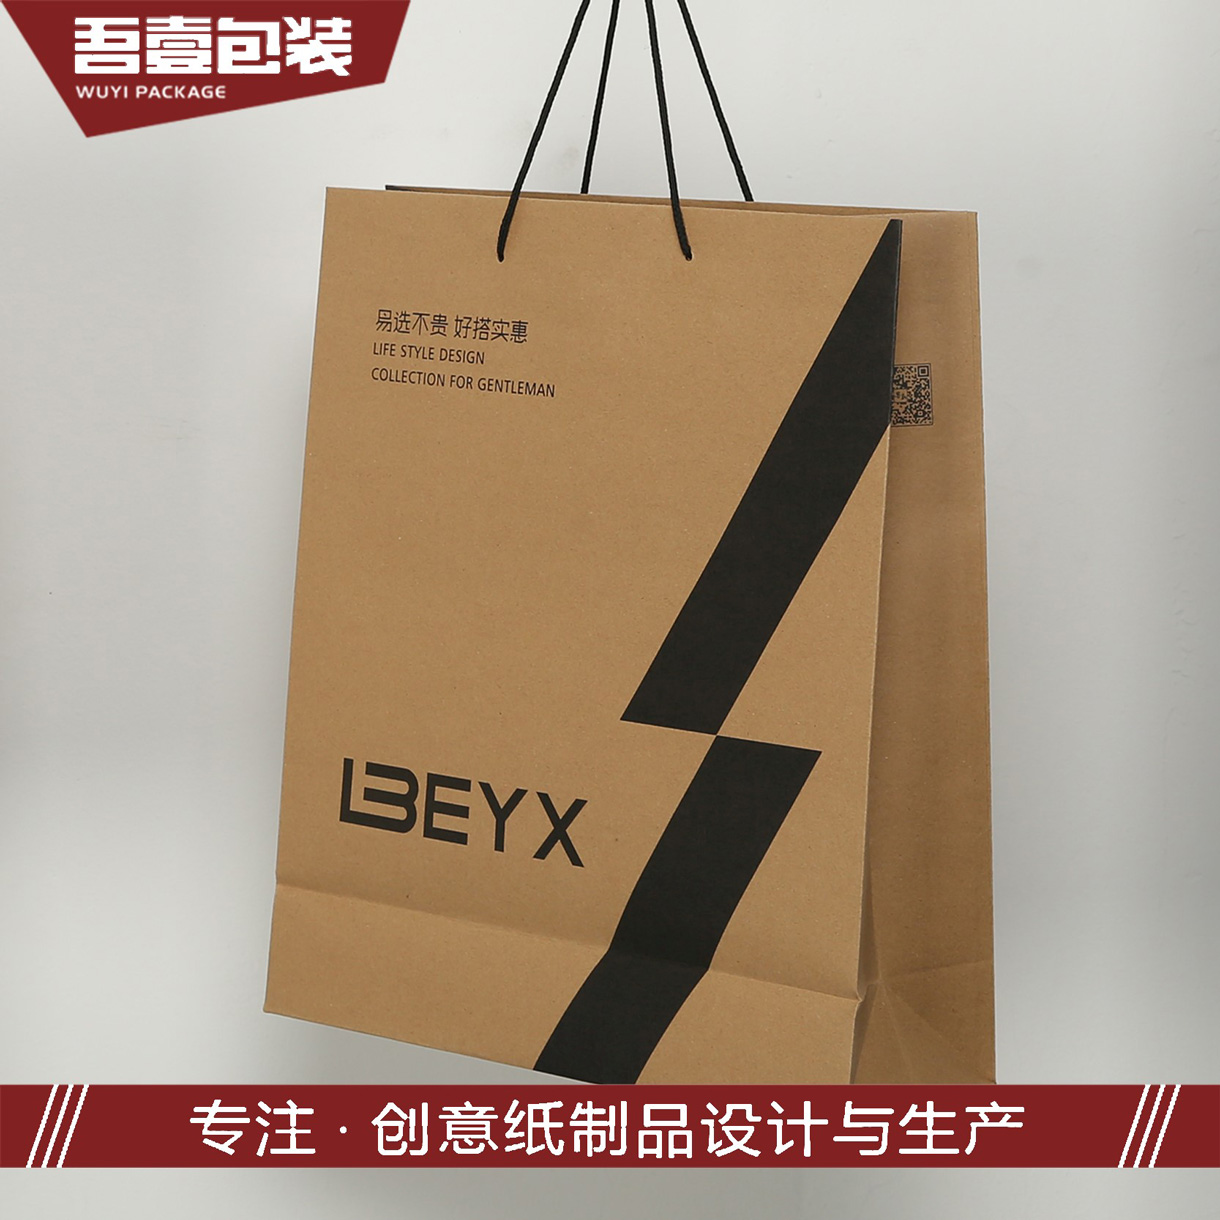 苏州吾壹包装彩印有限公司-中国上海国际包装展展览会